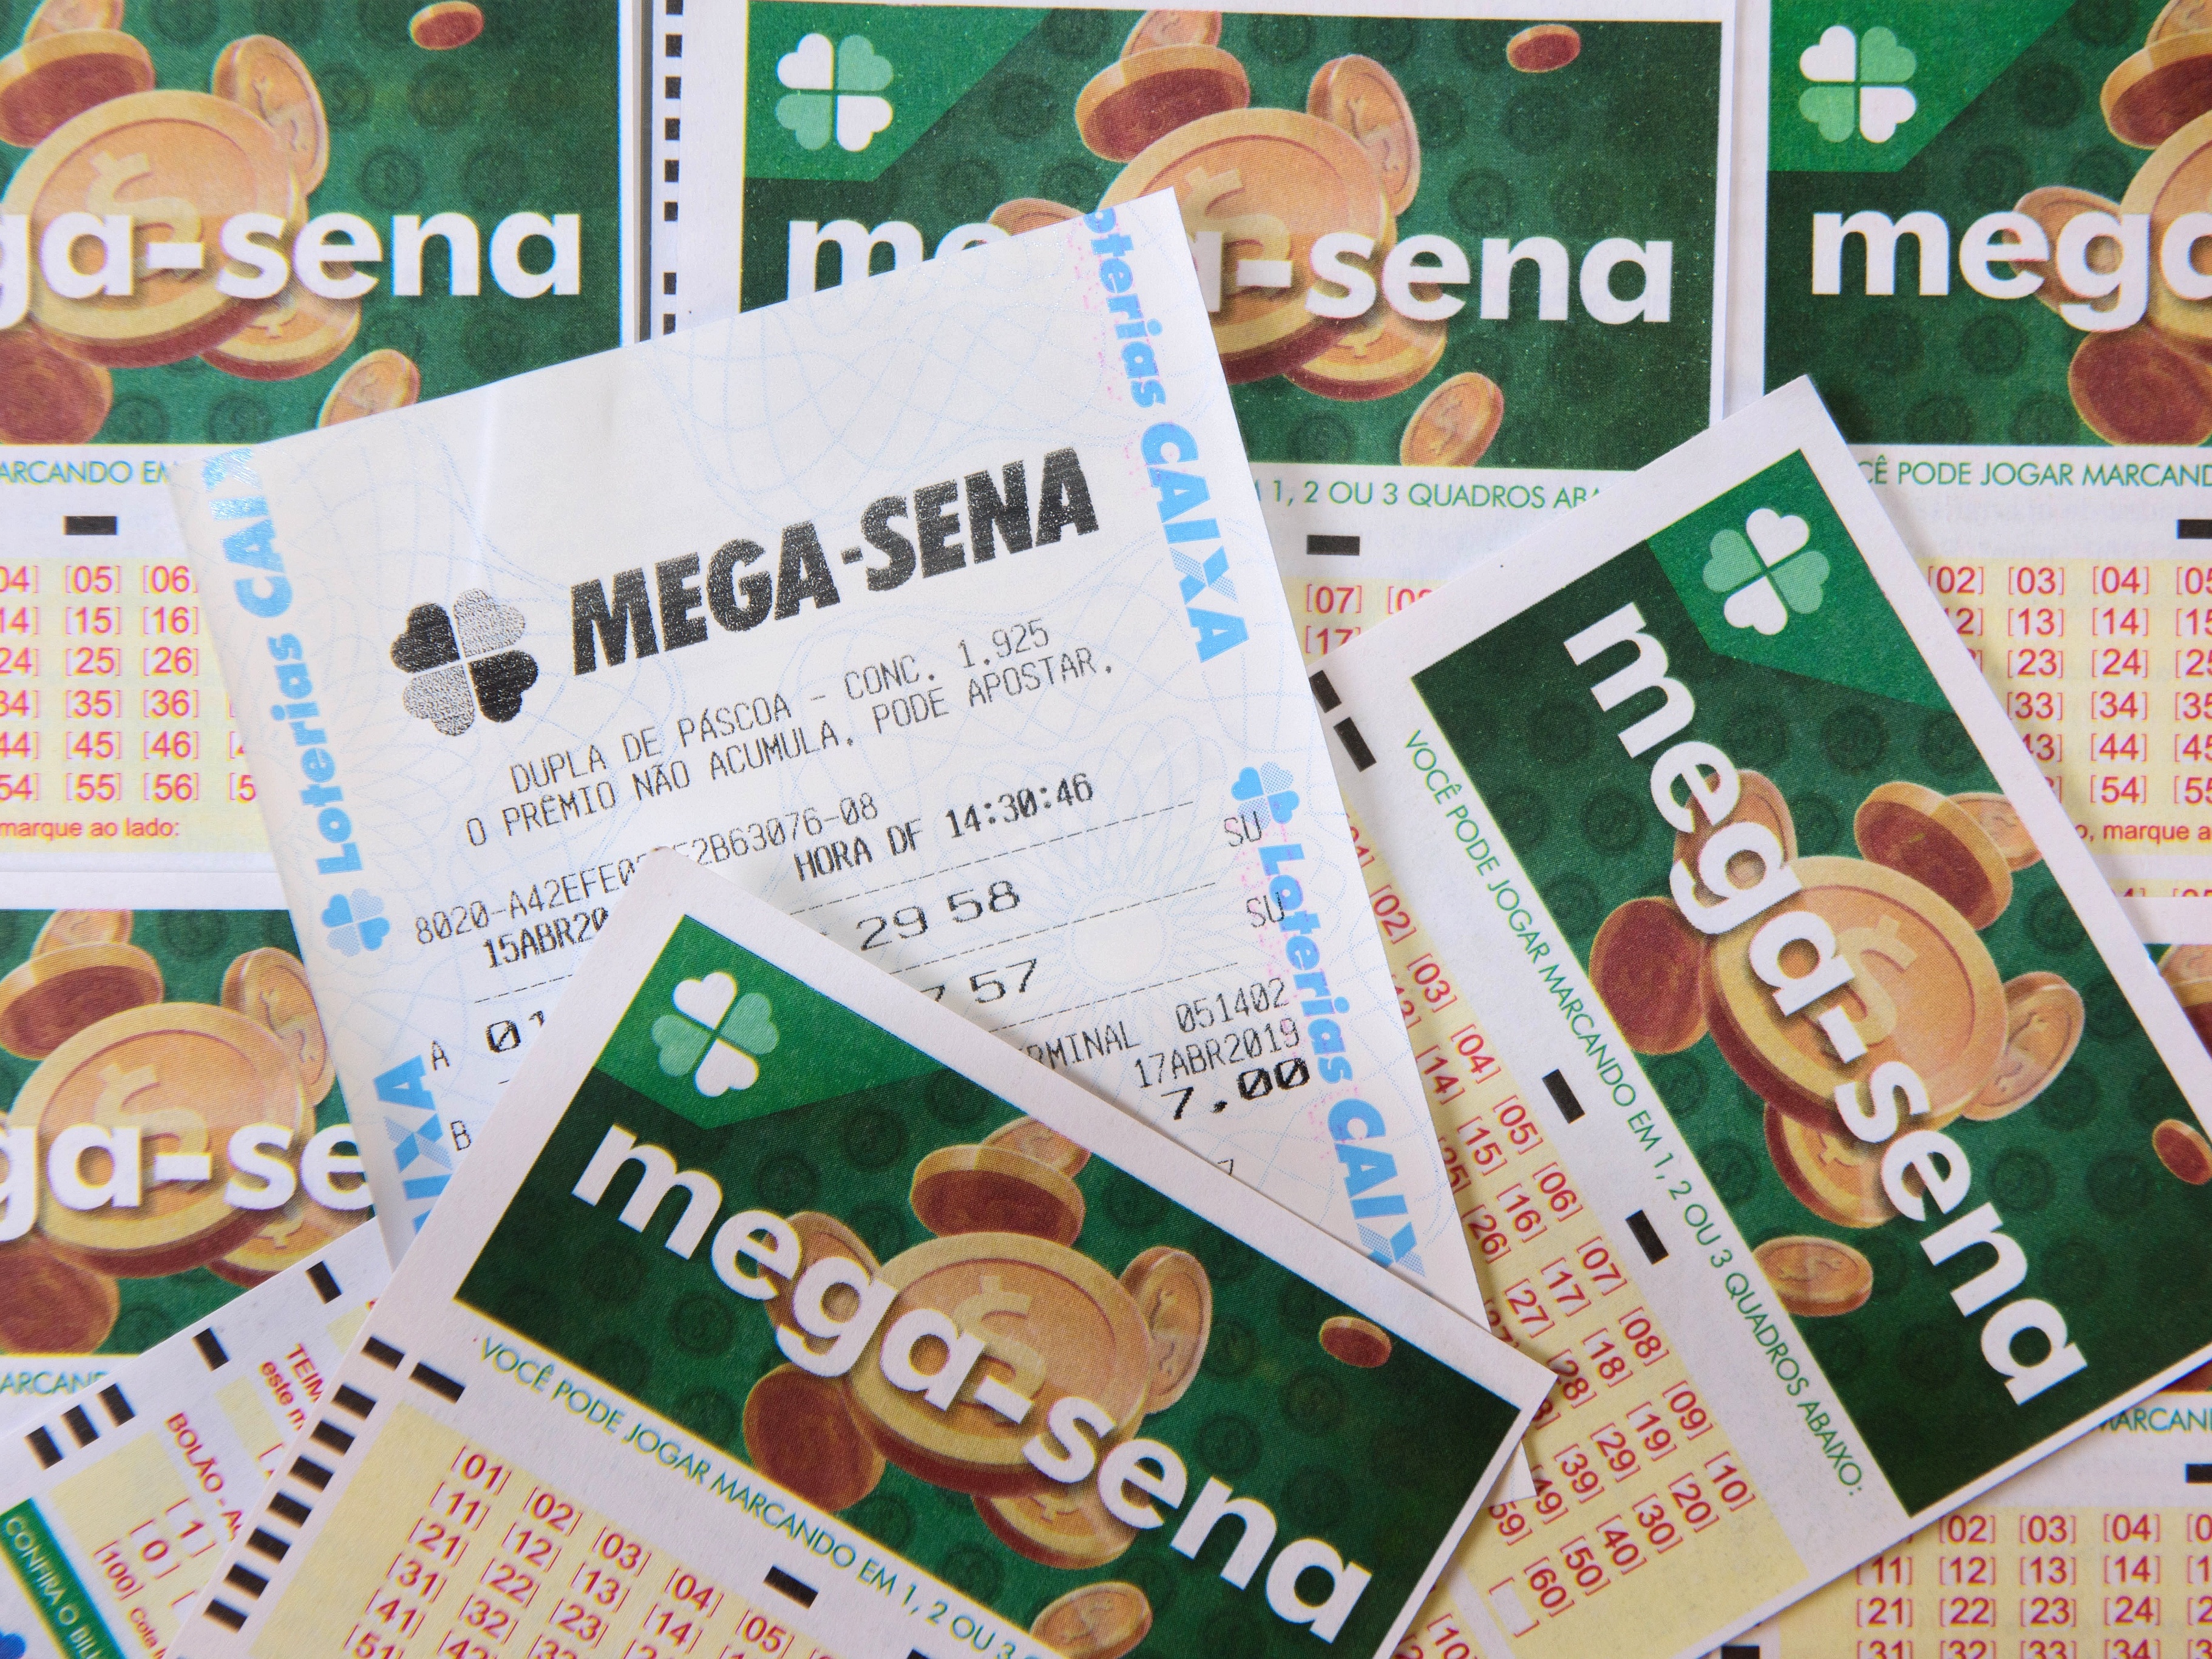 Mega da Virada: Veja perguntas e respostas sobre o maior prêmio da história  da loteria